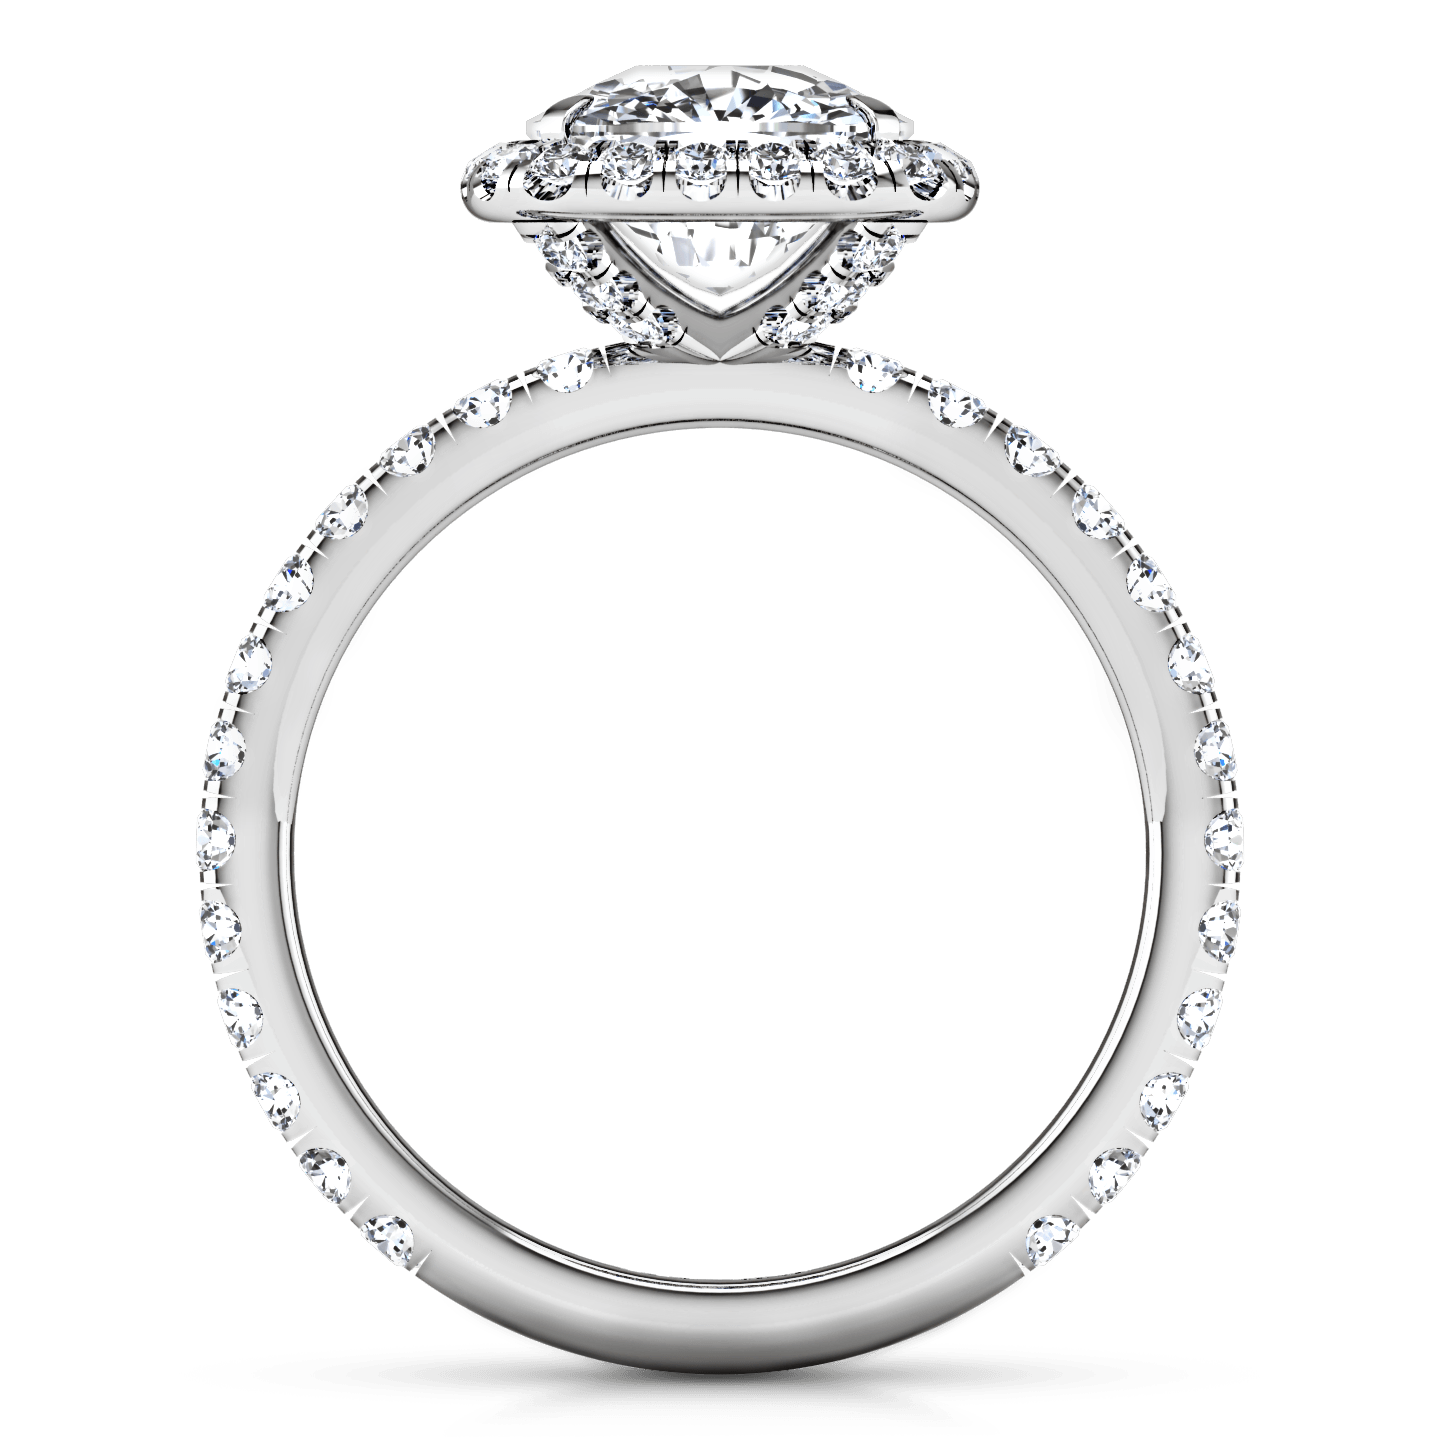 Halo Cushion Cut Diamond Engagement Ring Salice 14K White Gold engagement rings imaginediamonds 